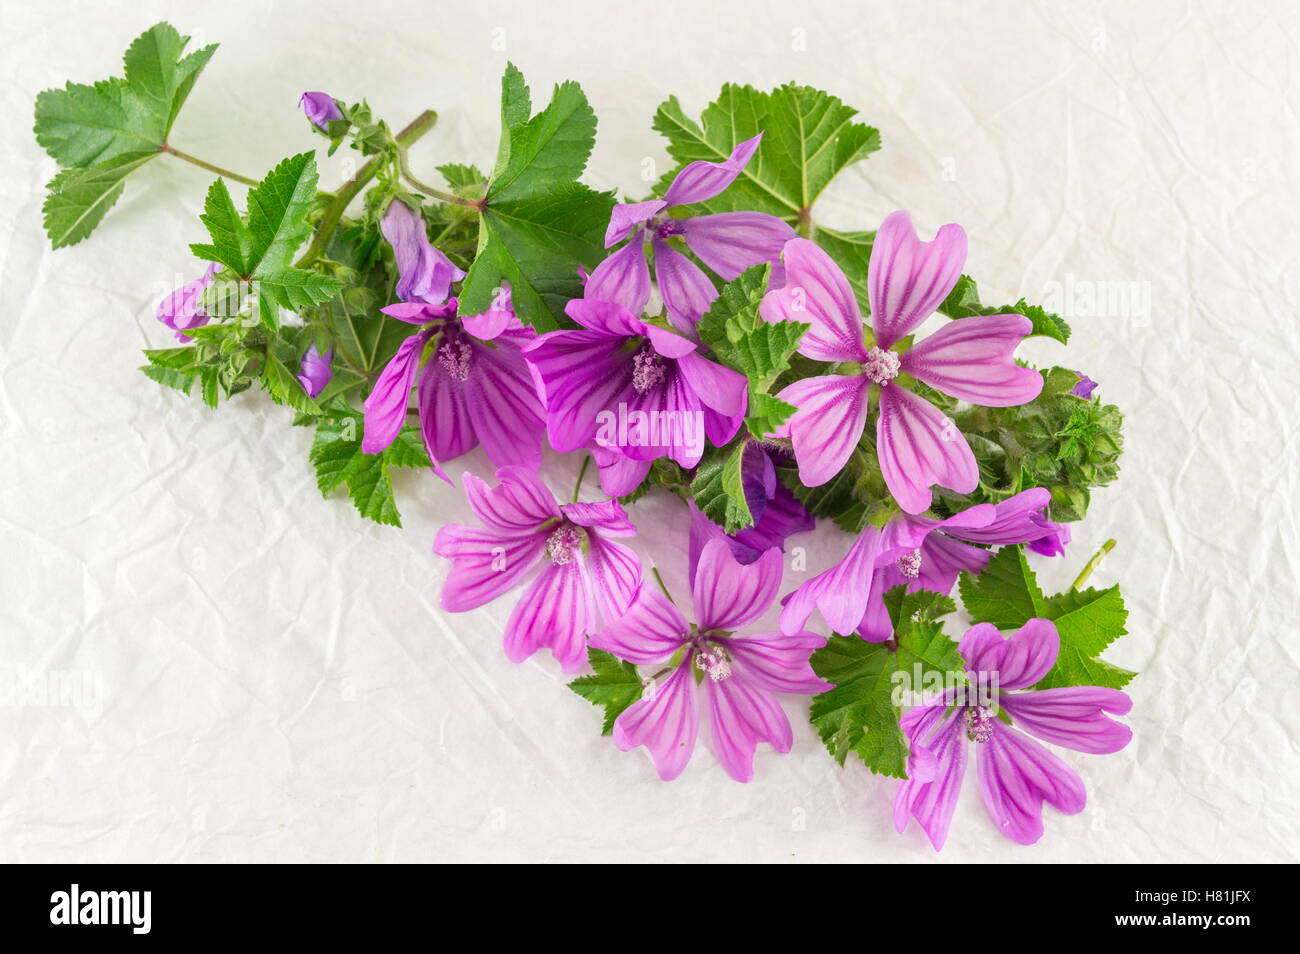 Malva sylvestris, mauve, fleurs bouquet sur tissu blanc Banque D'Images